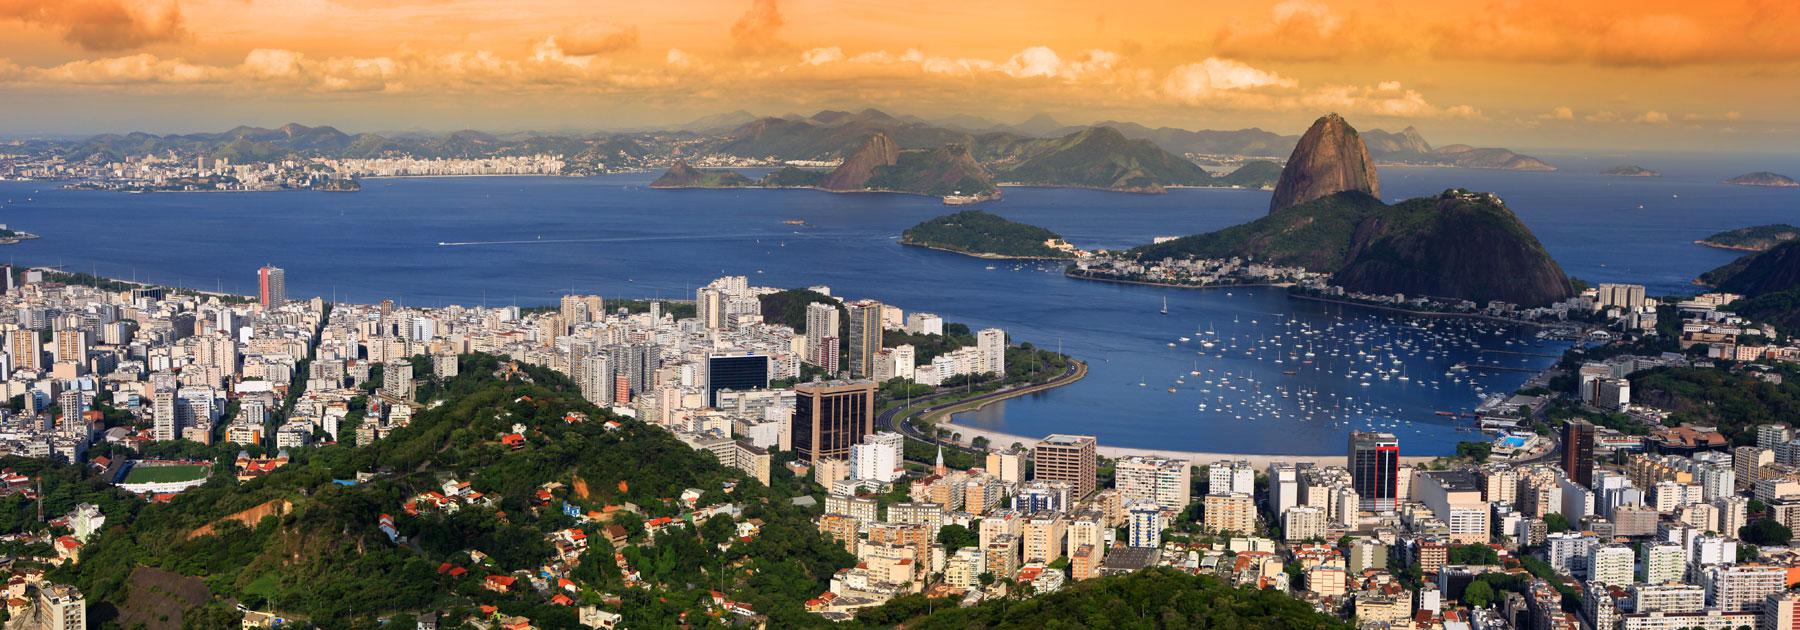 Brazil: Rio de Janeiro, Iguassu Falls Group Tour